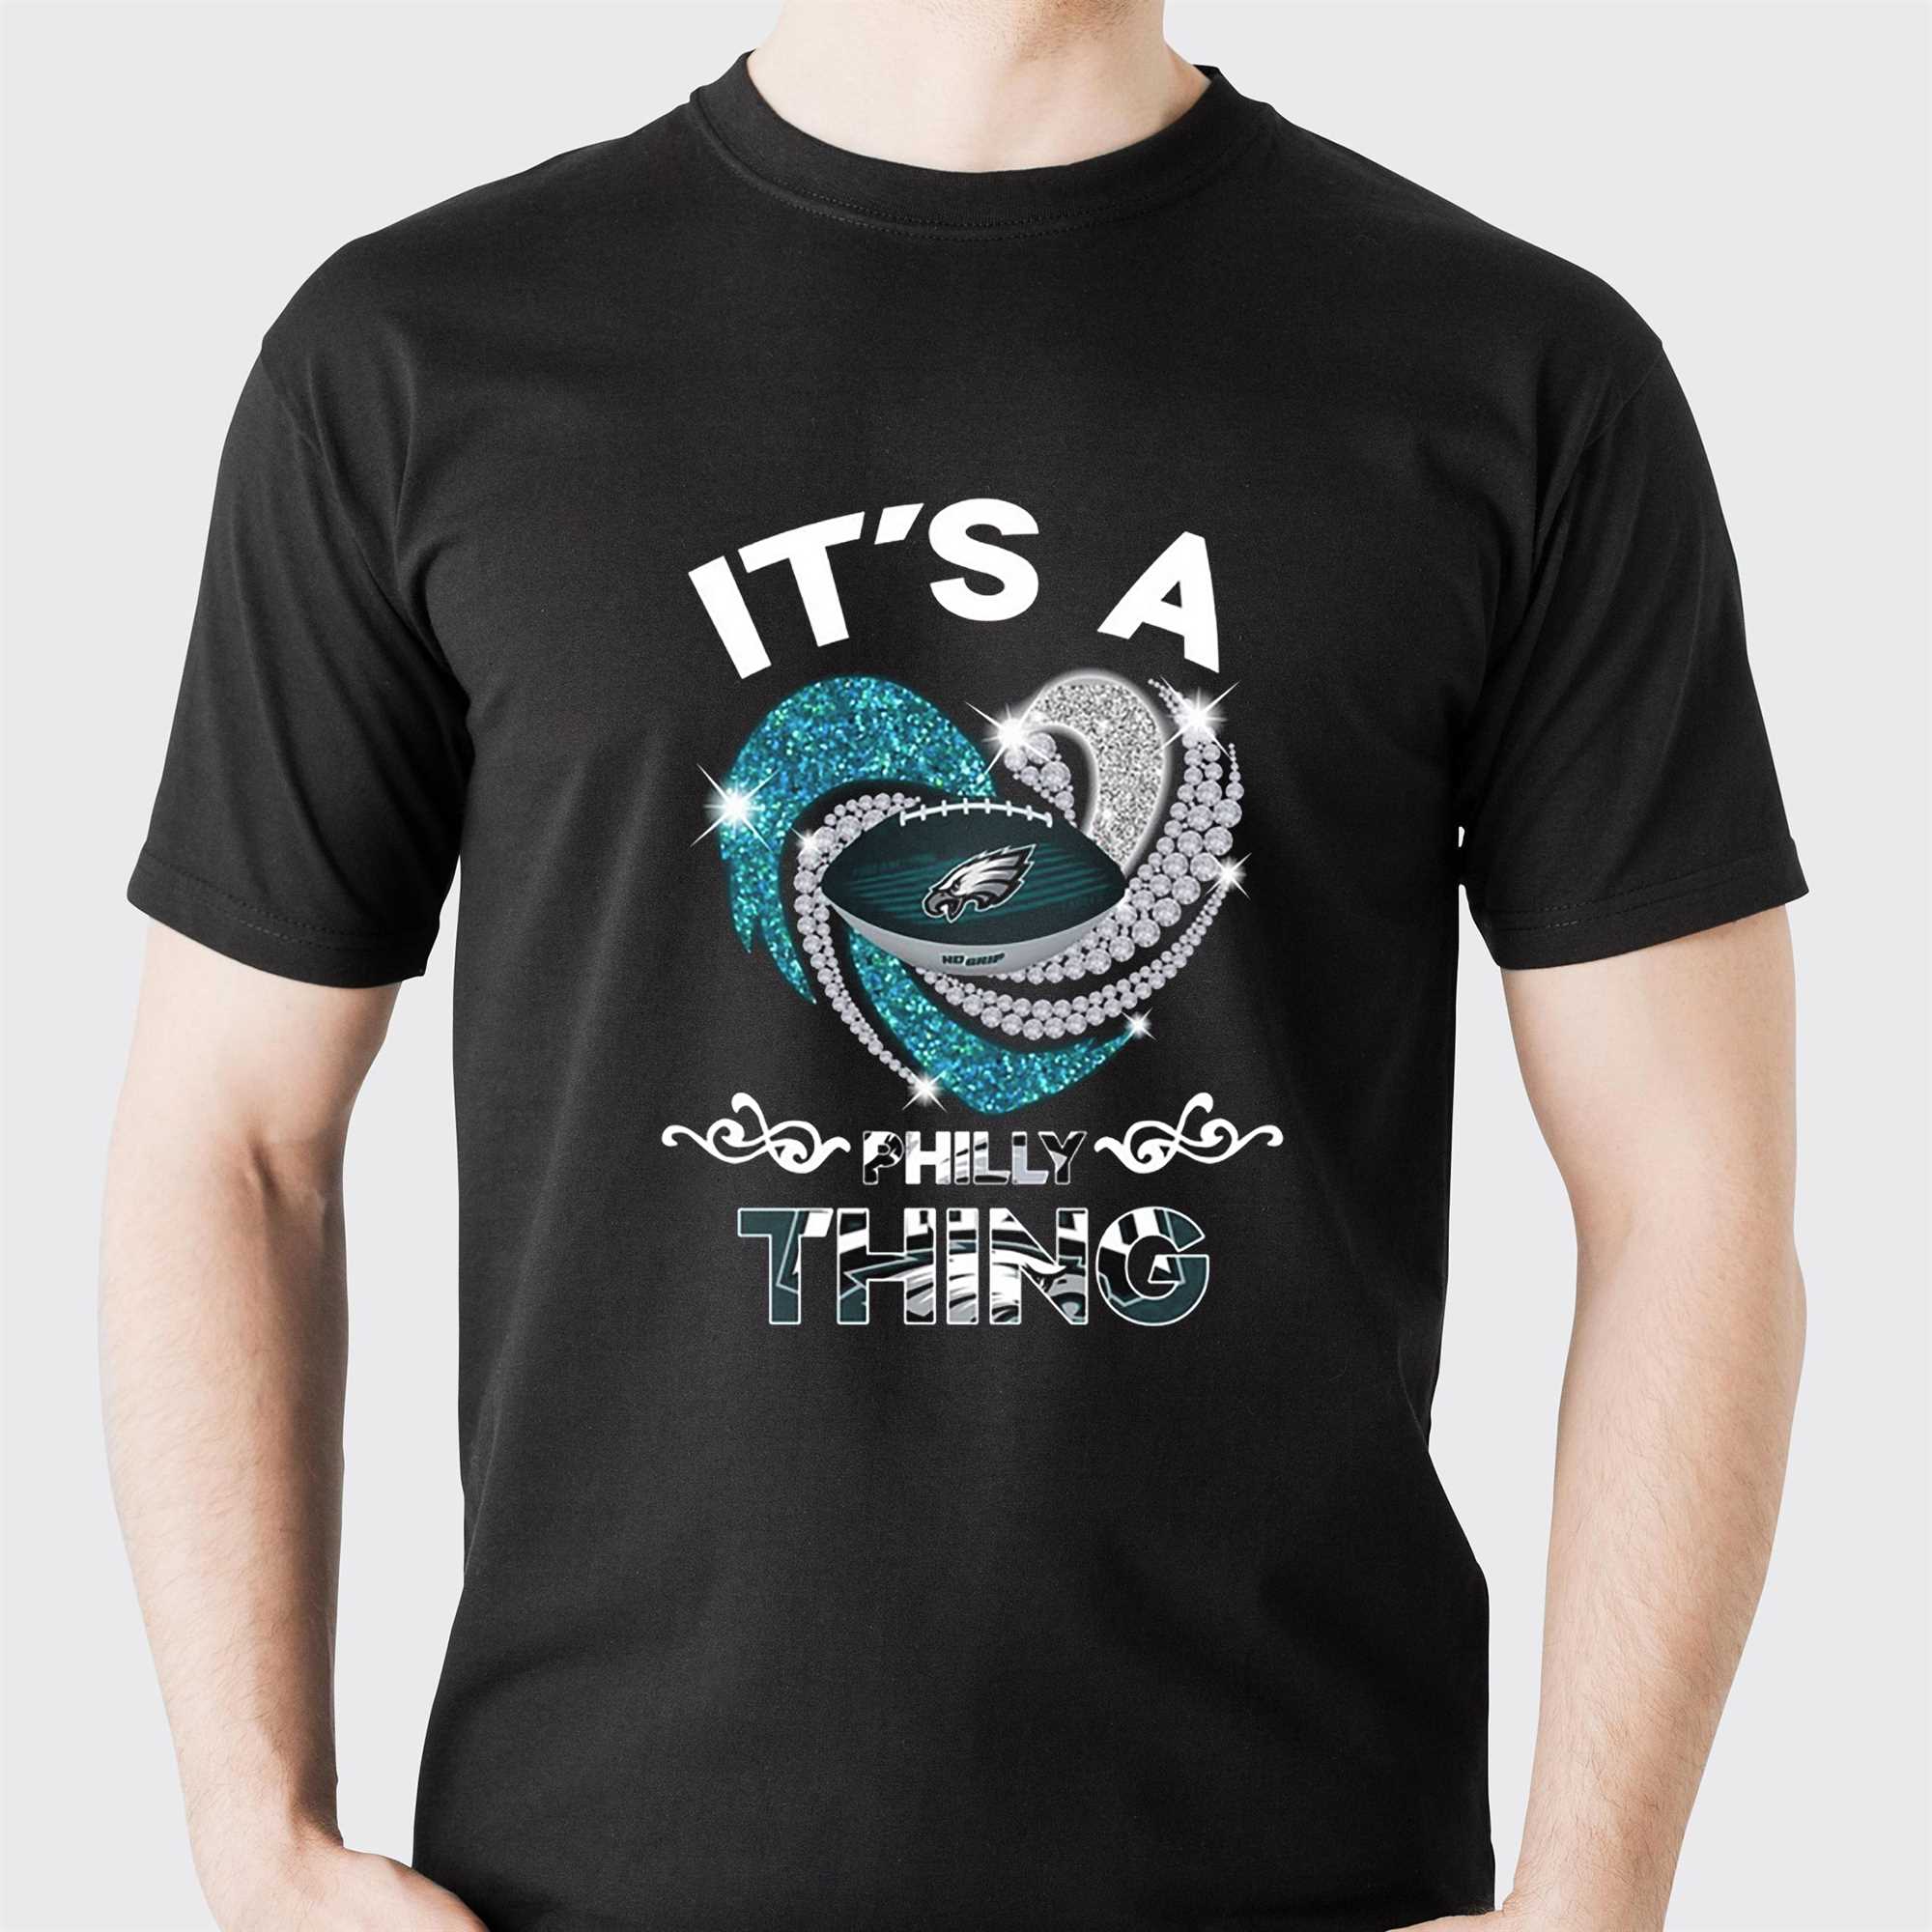 It Is A Philadelphia Eagles Thing T-shirt - Shibtee Clothing